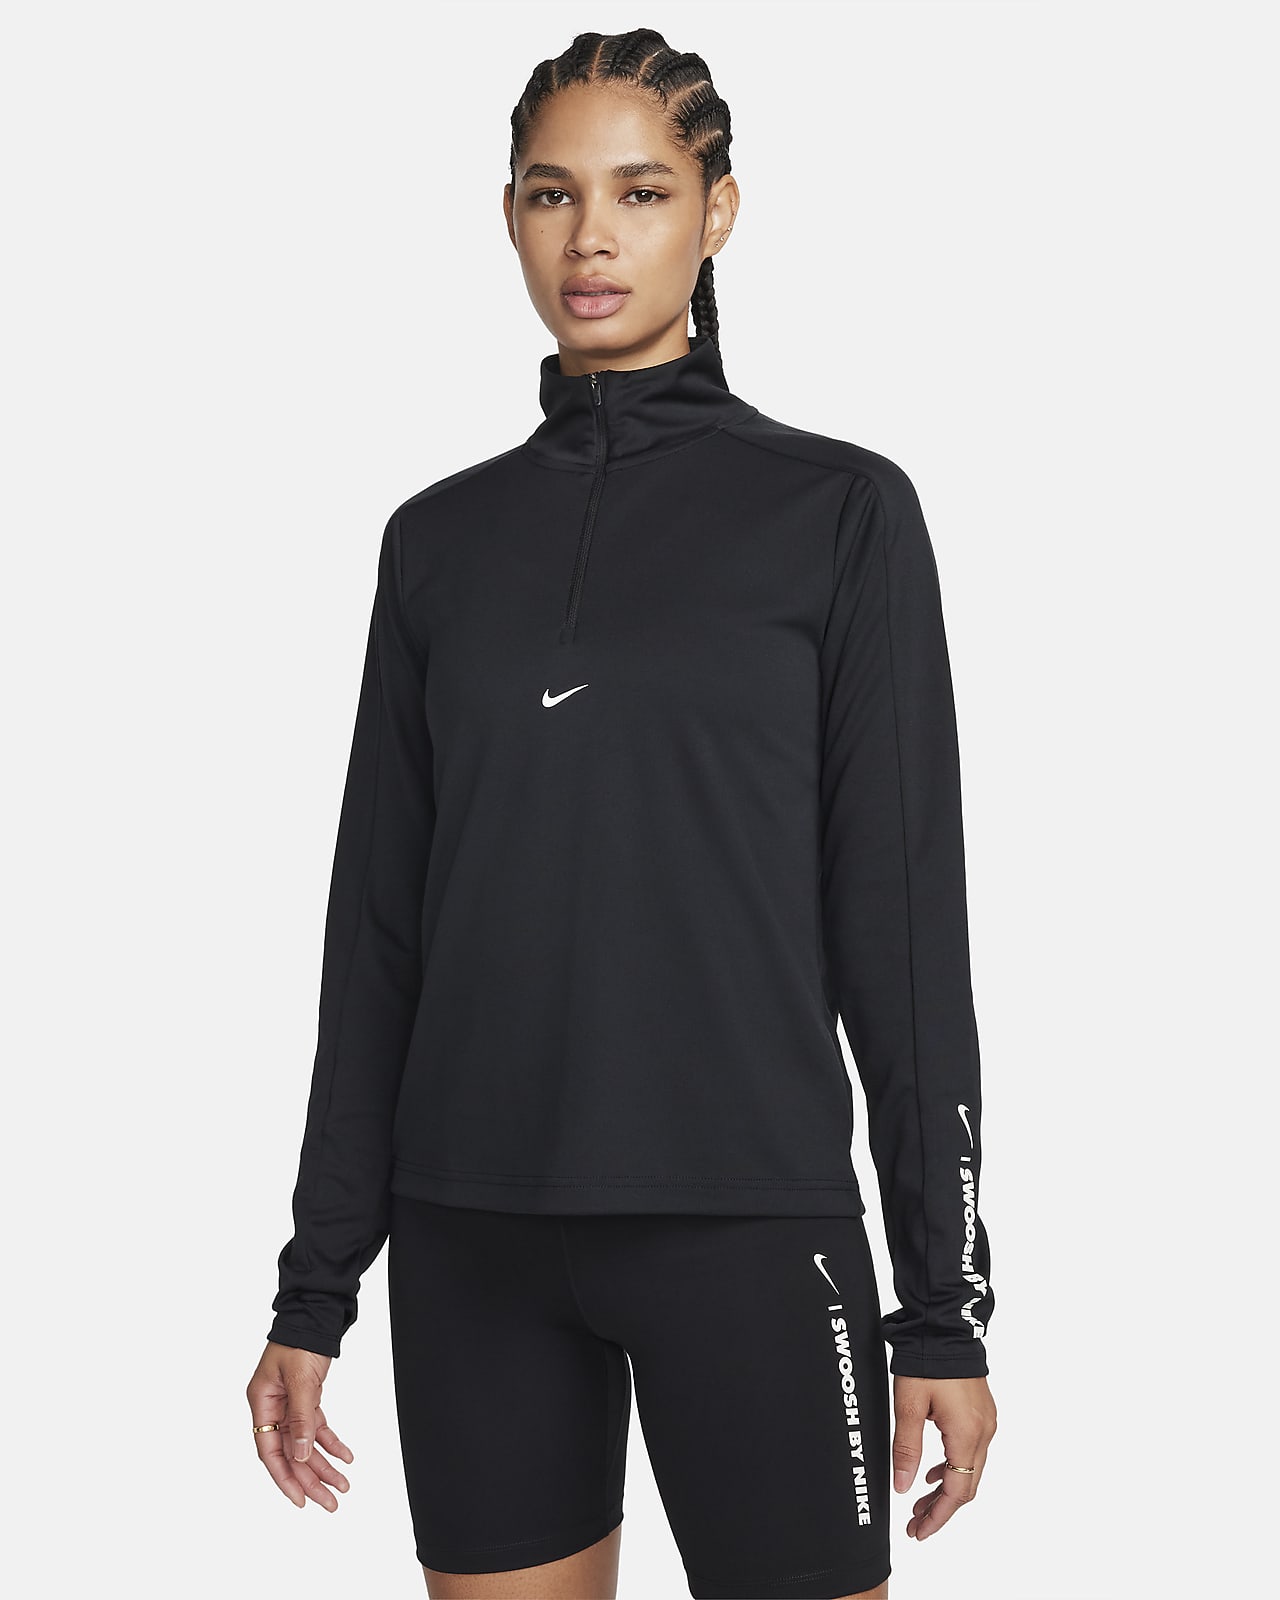 Γυναικείο φούτερ Dri-FIT με φερμουάρ στο 1/4 του μήκους Nike Pacer